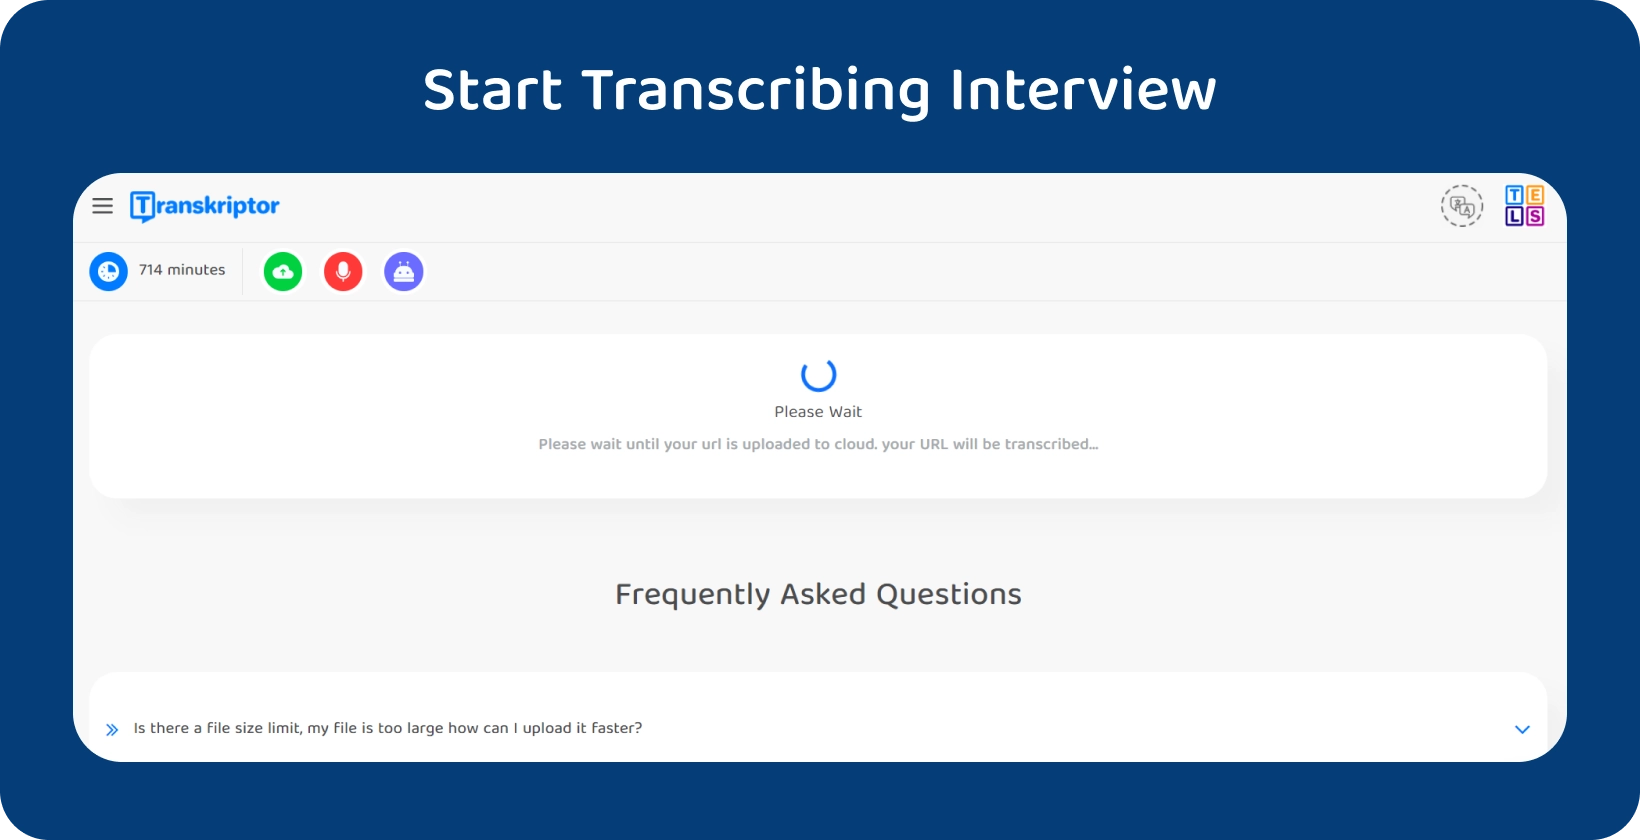 Aloita väitöskirjan transkriptio Transkriptor, jossa 714 minuutin haastattelu odottaa käsittelyä.